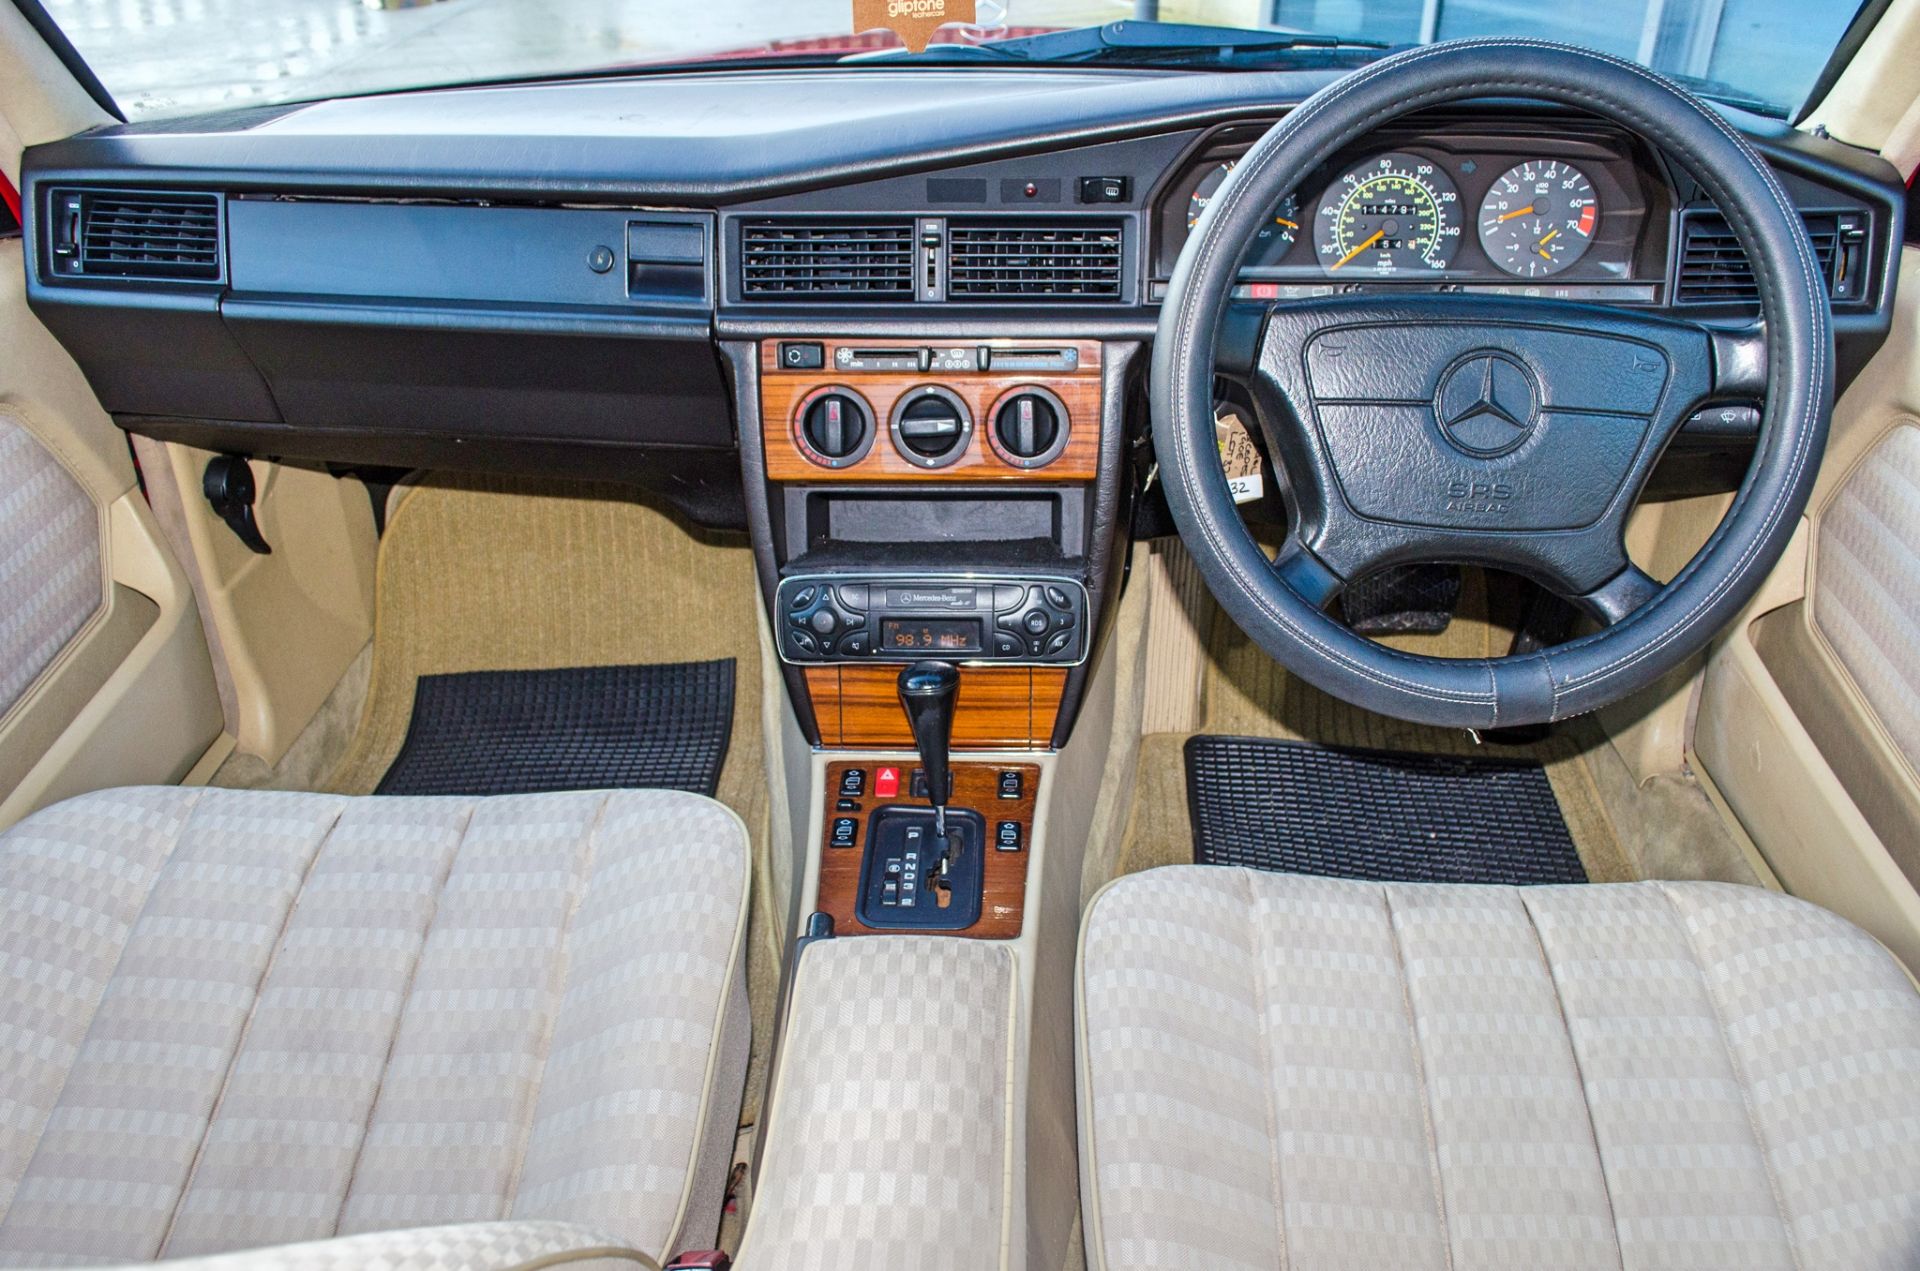 1993 Mercedes-Benz 190E 2.6 Litre 4 door salon - Image 43 of 52